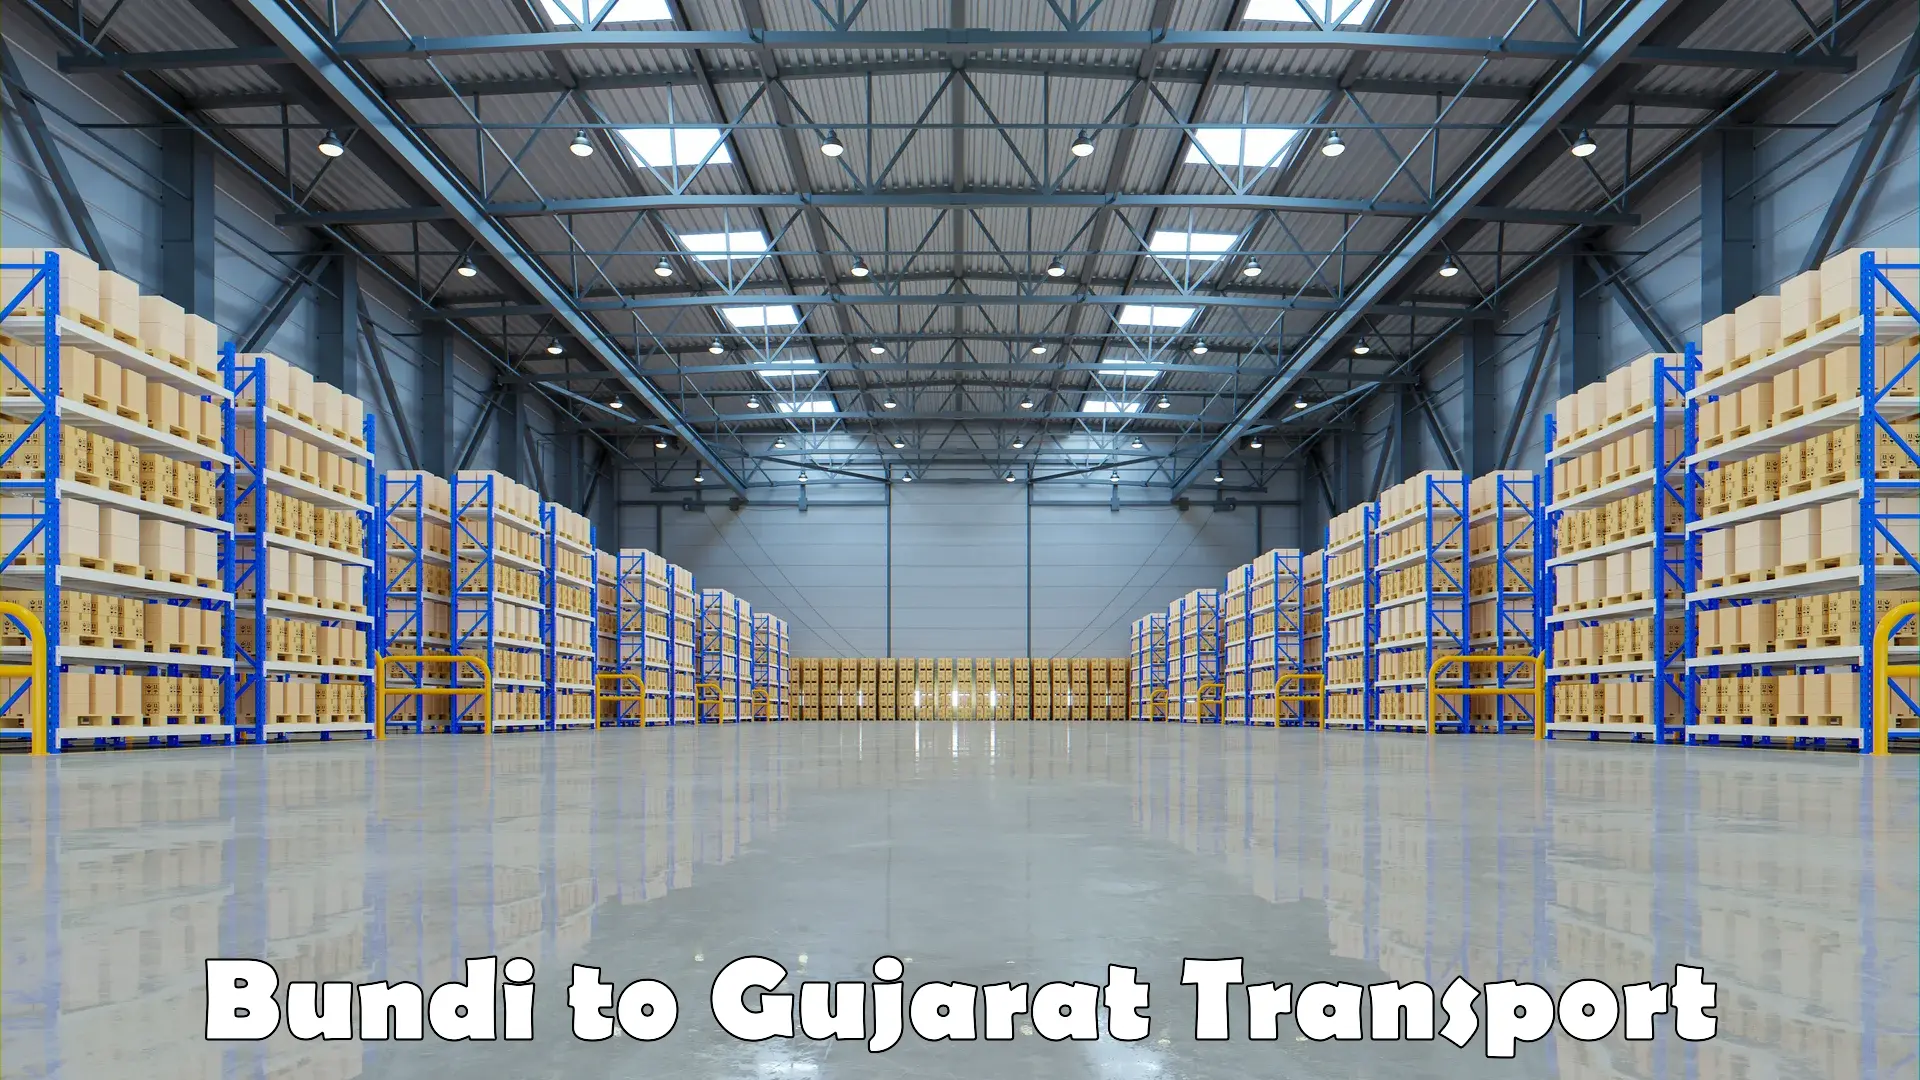 Furniture transport service Bundi to Gujarat